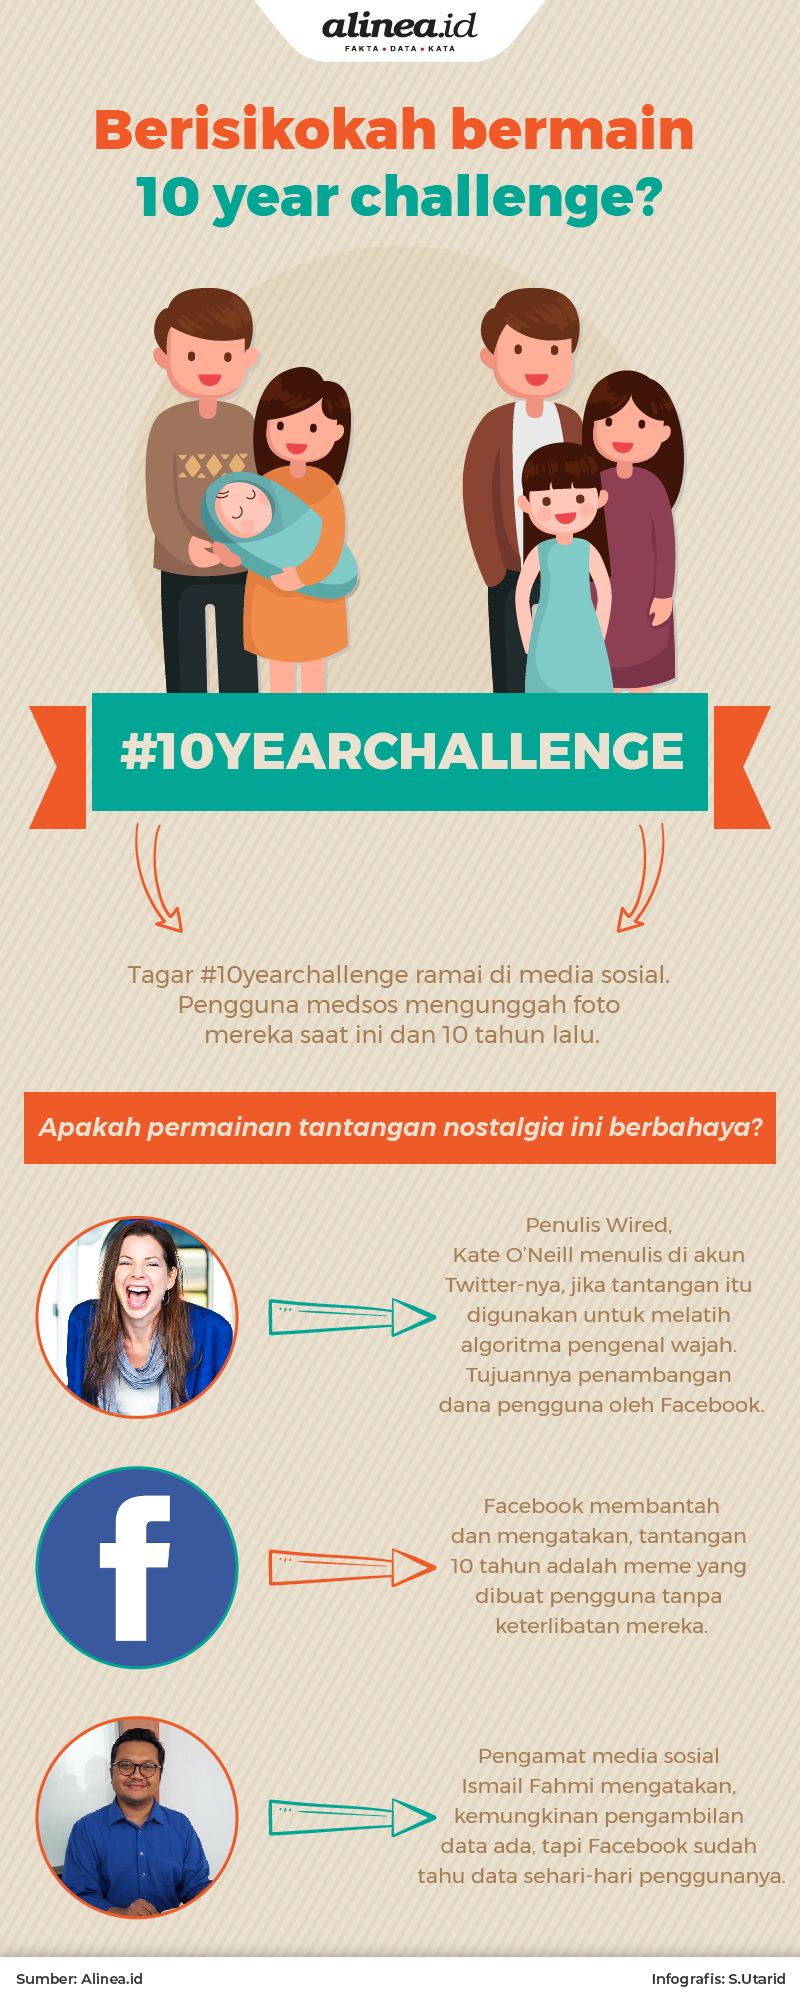 Tagar #10yearchallenge belakangan ini ramai di Facebook, Twitter, dan Instagram.